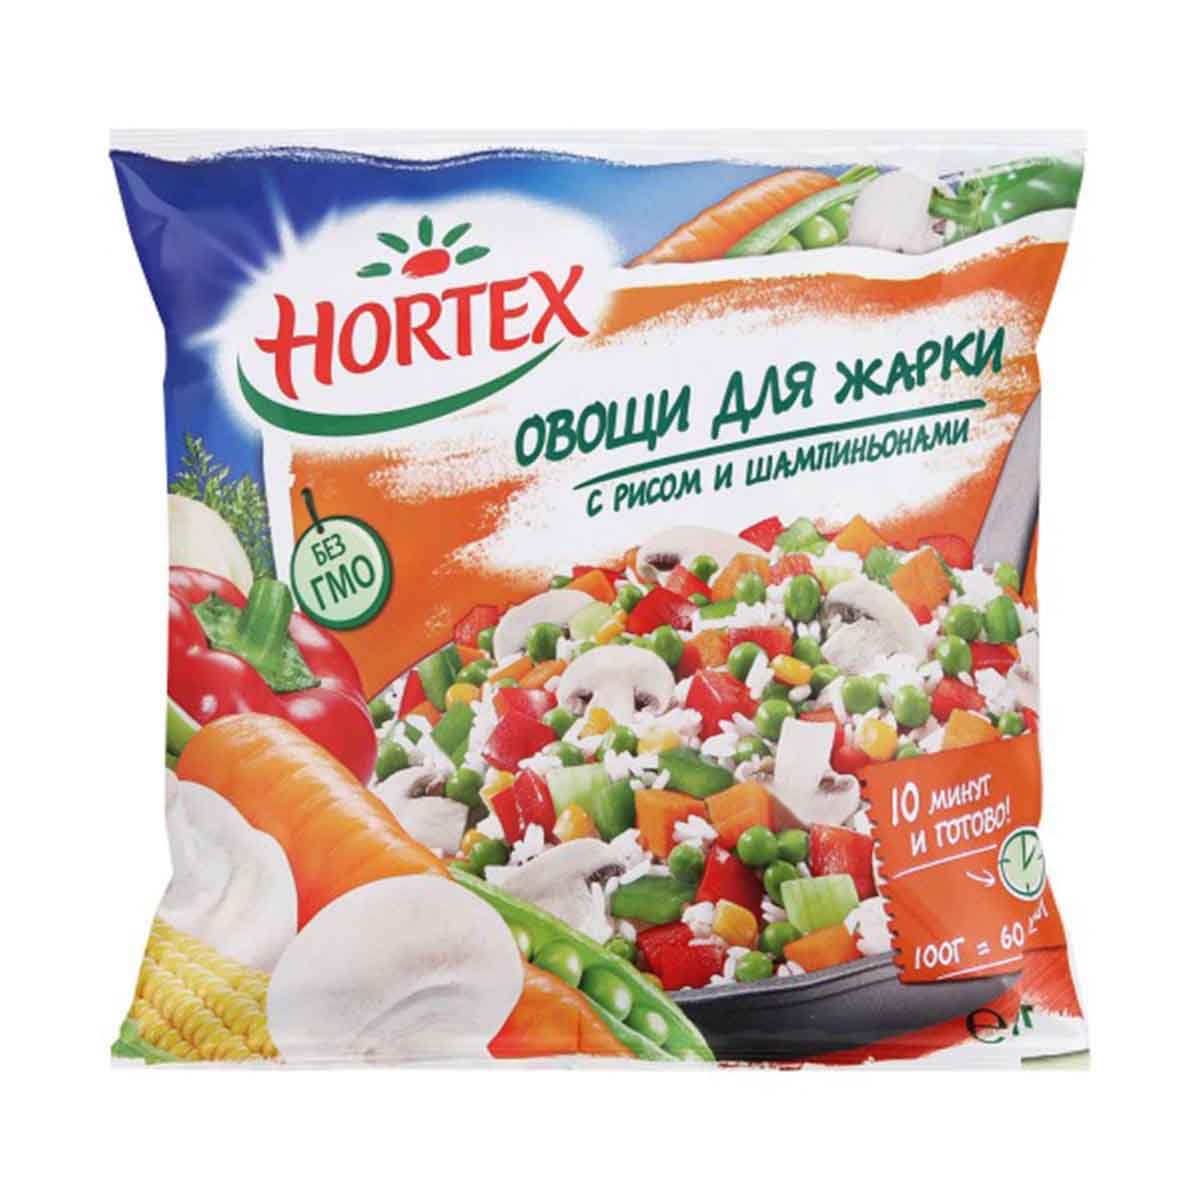 Замороженные овощи в упаковке. Смесь "VIP" 400г/12шт Hortex. Овощи для жарки Hortex 400г. "Hortex" смесь "VIP" 400 Г.. Овощная смесь Hortex VIP быстрозамороженная 400 г.